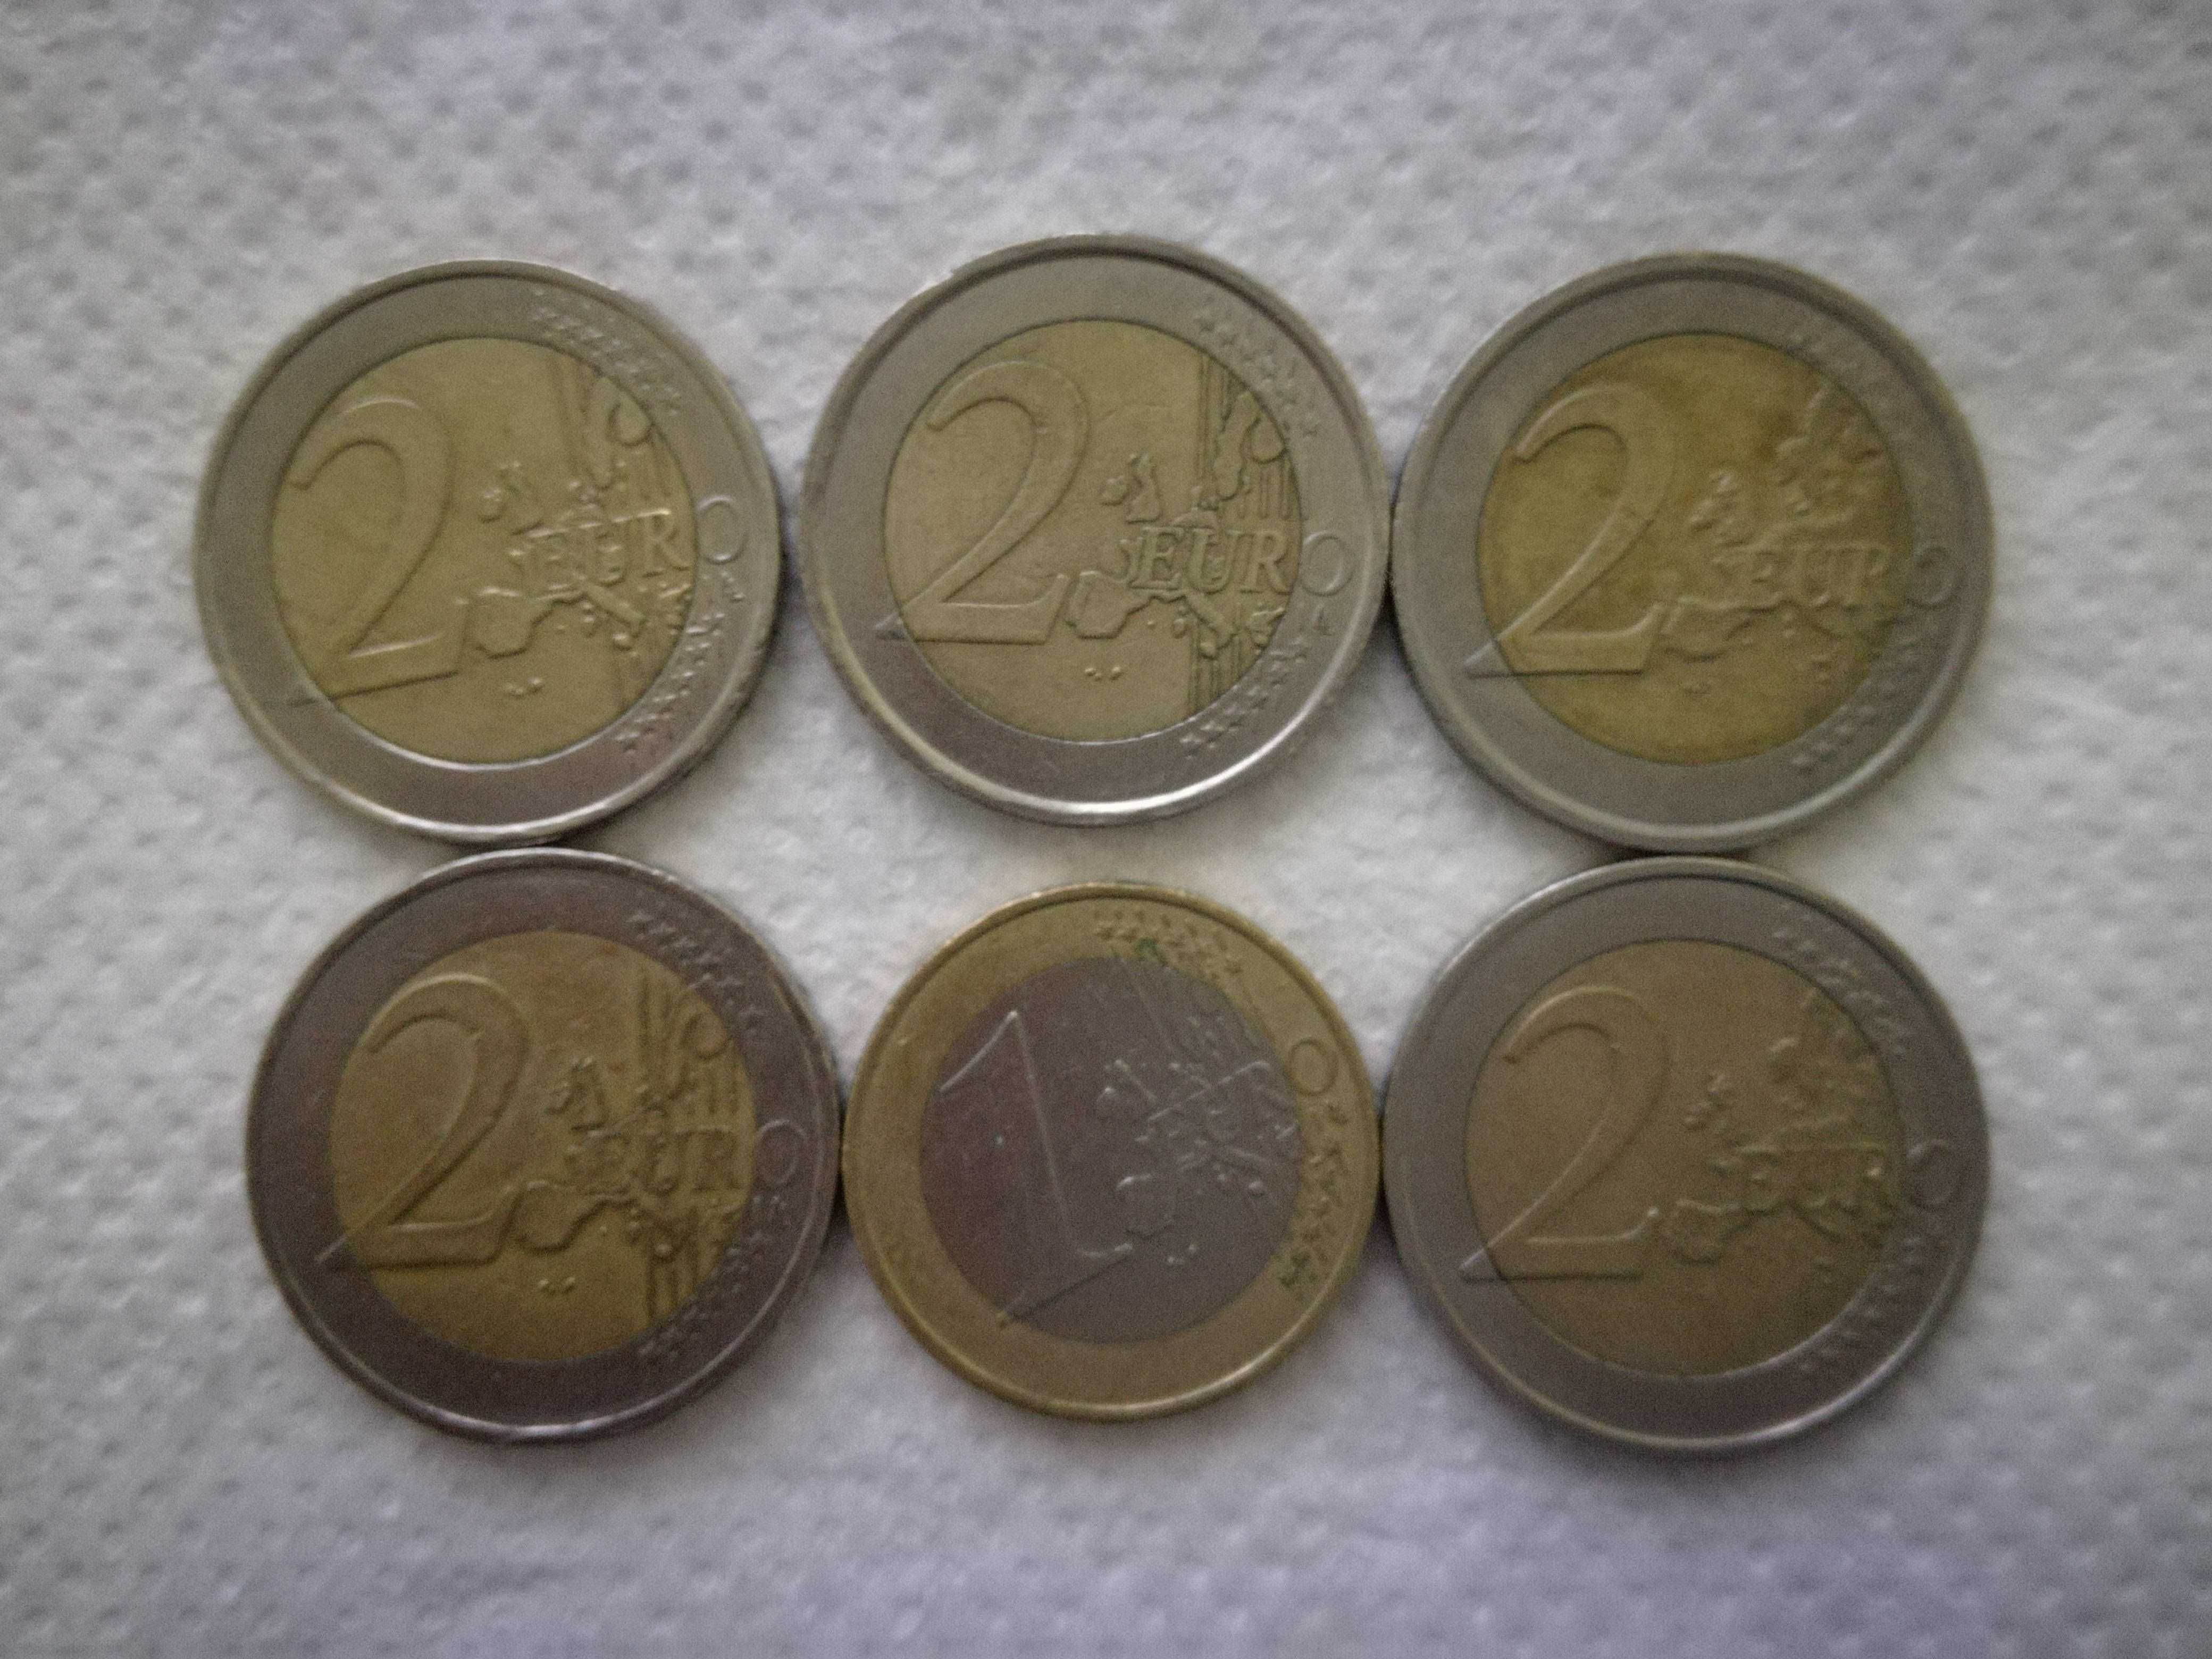 Vand monede 2 euro rare de colectie